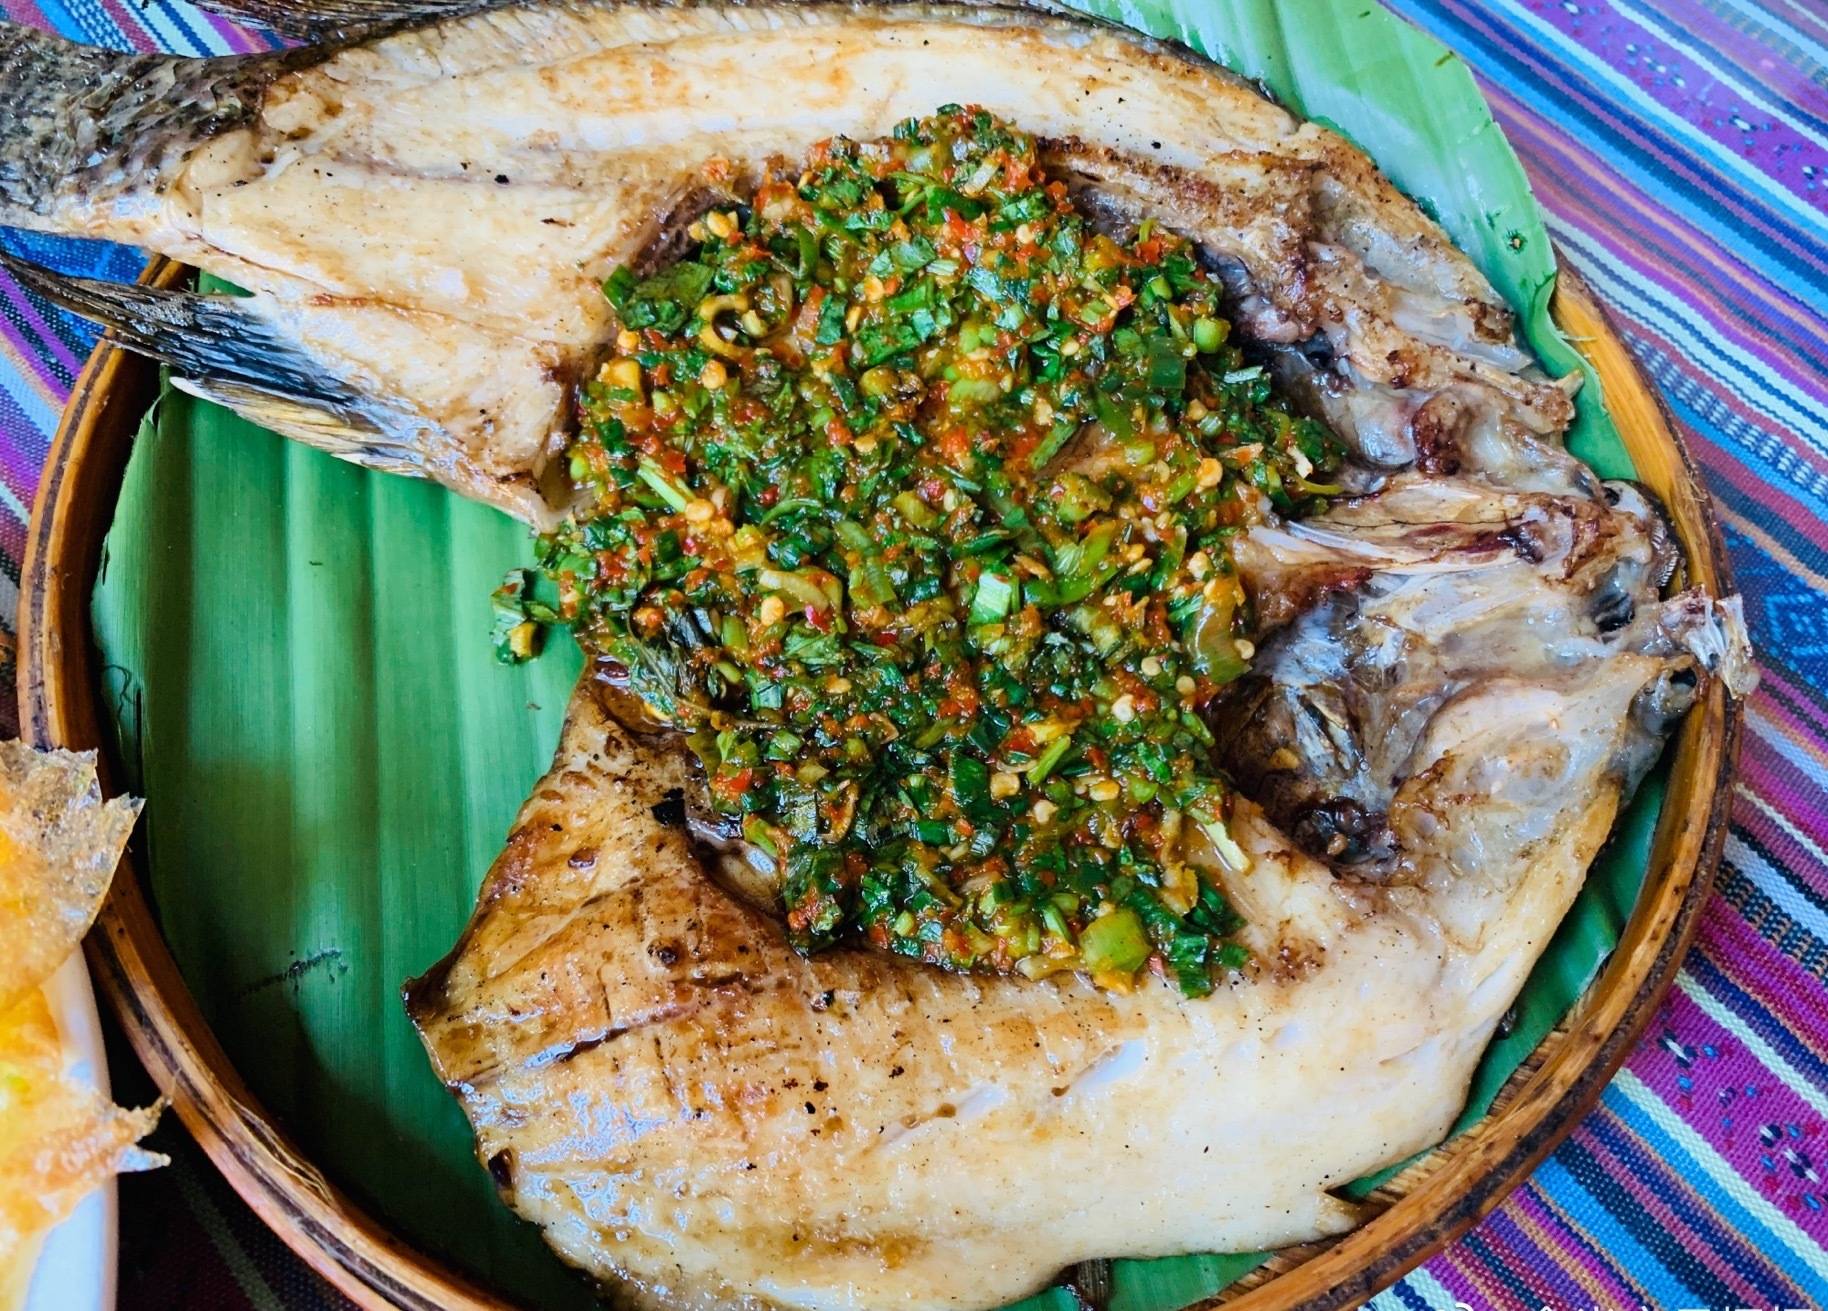 来过版纳的爱鱼人士必定品尝过香茅草烤鱼,这一道美味在傣味菜肴上的